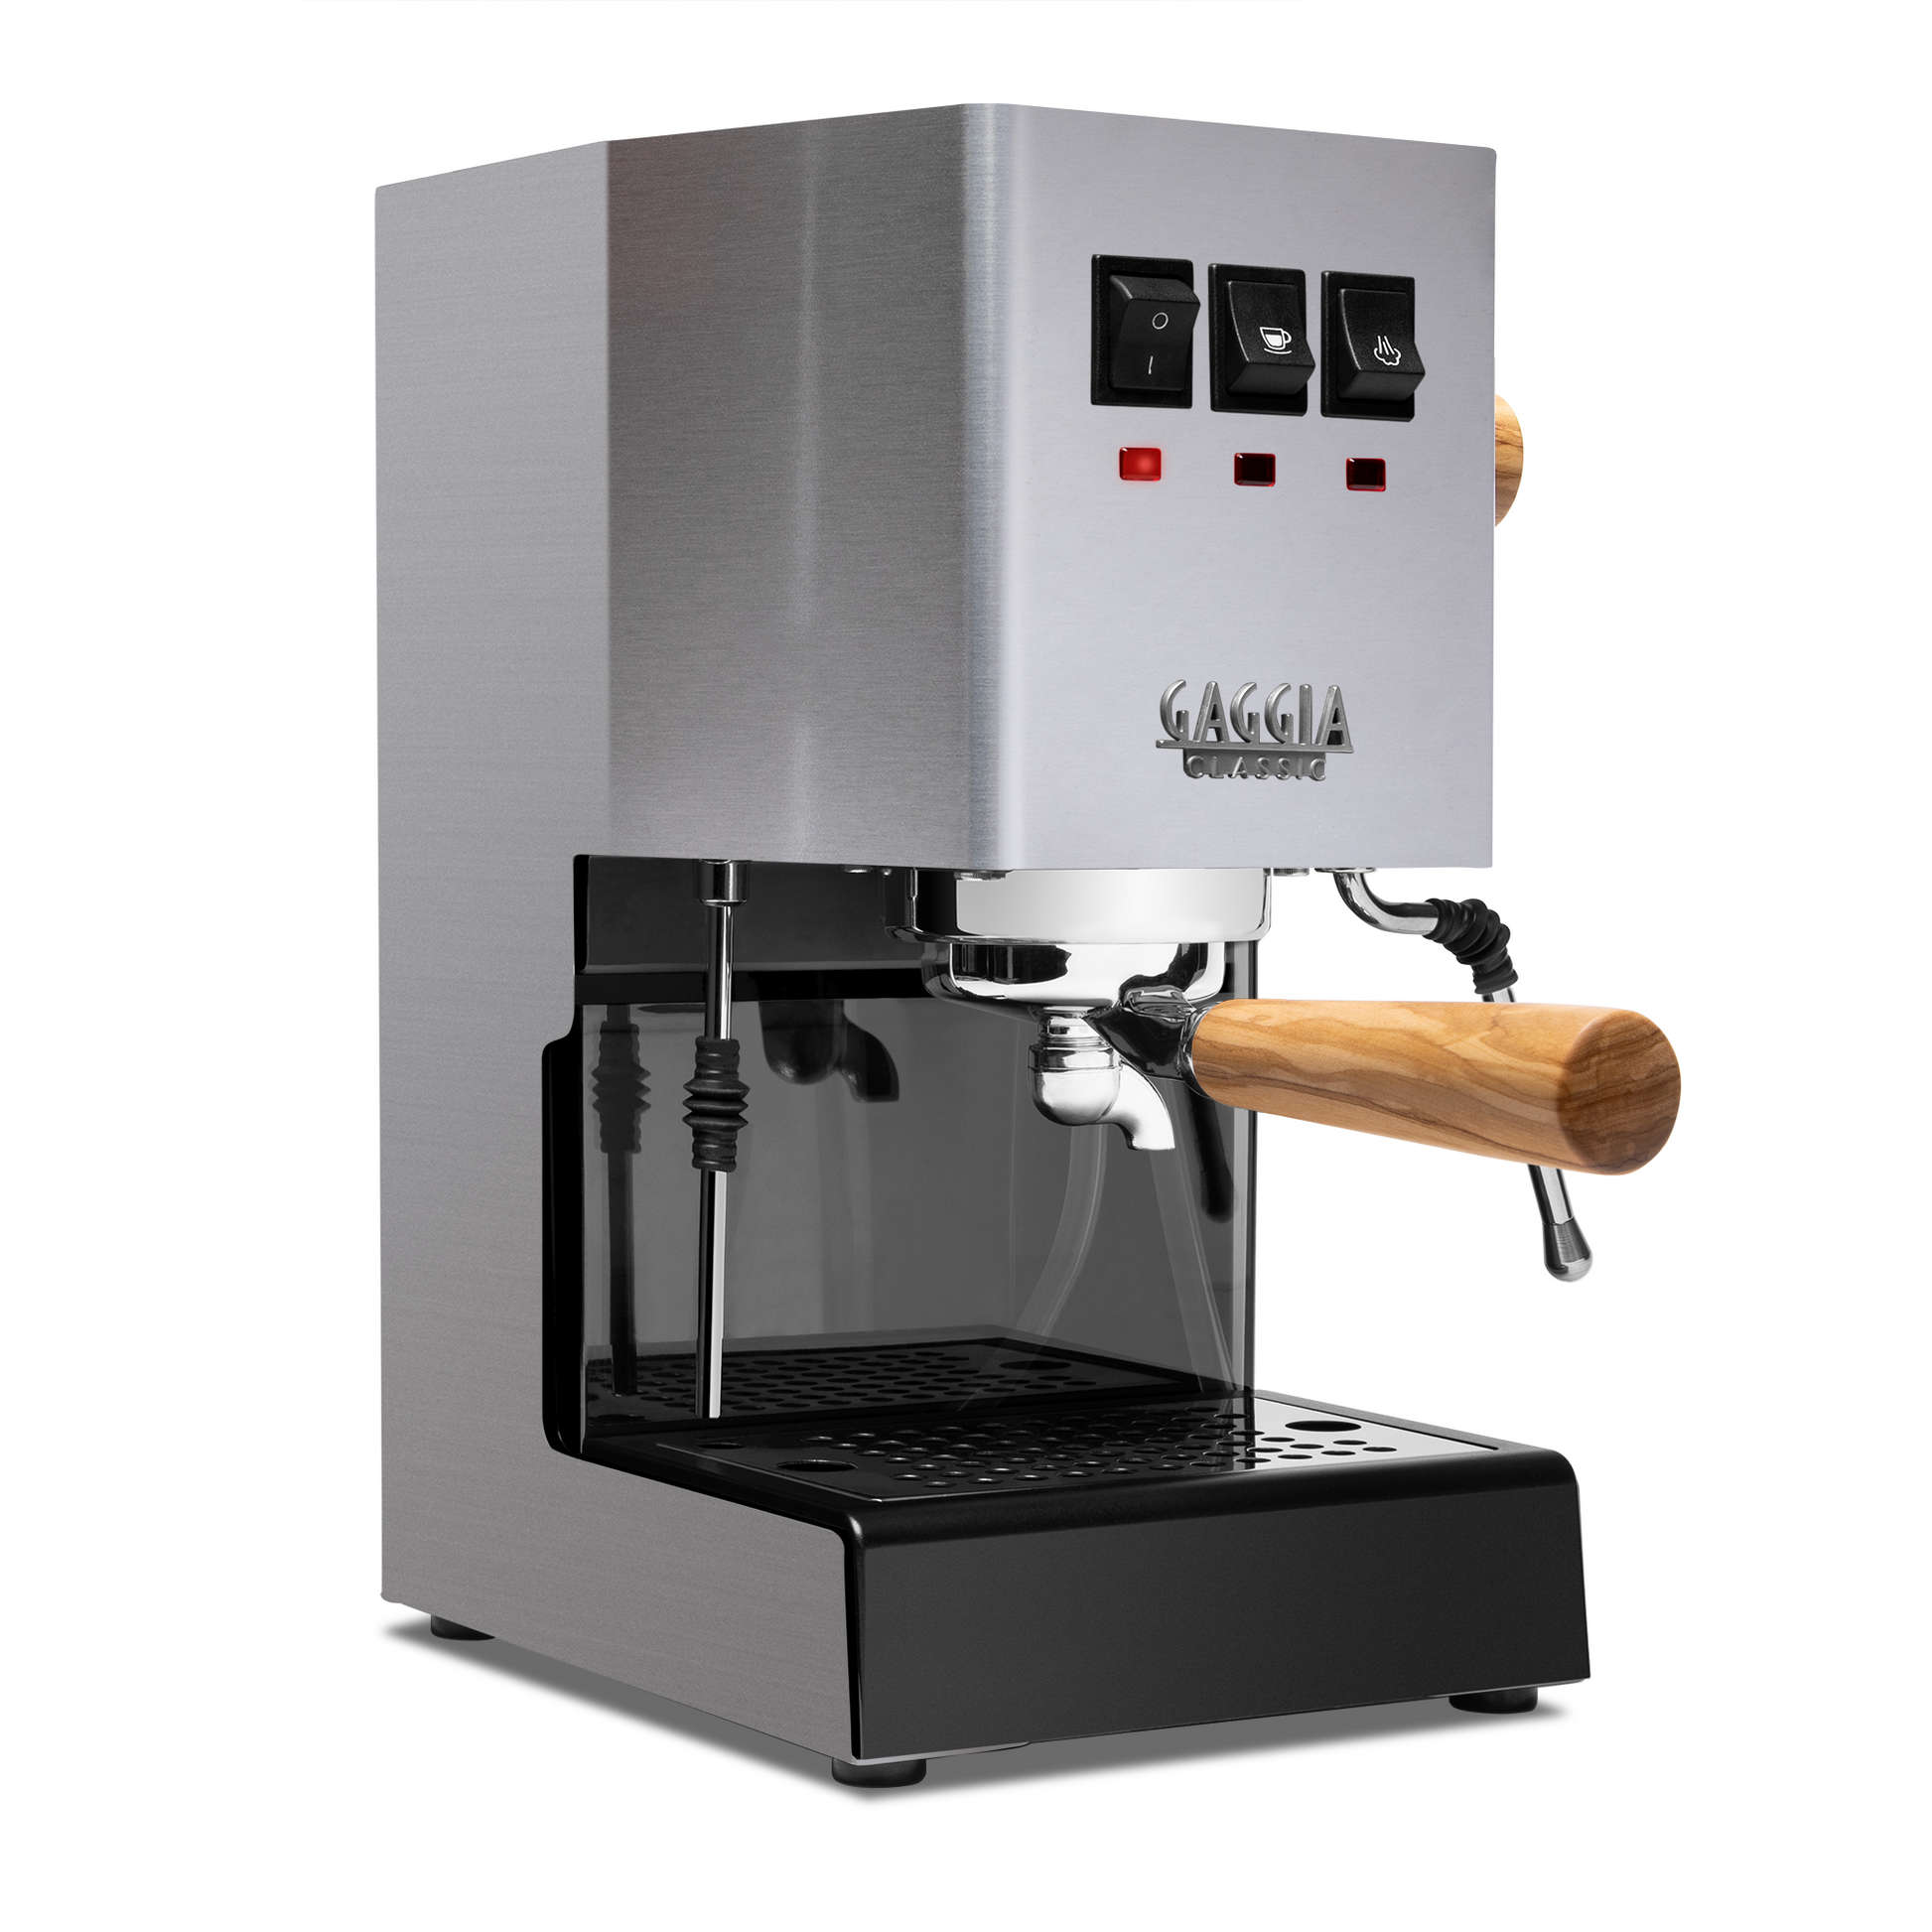 Gaggia Classic Evo Pro Semi-Automatic Espresso Machine with Olive Wood –  Whole Latte Love